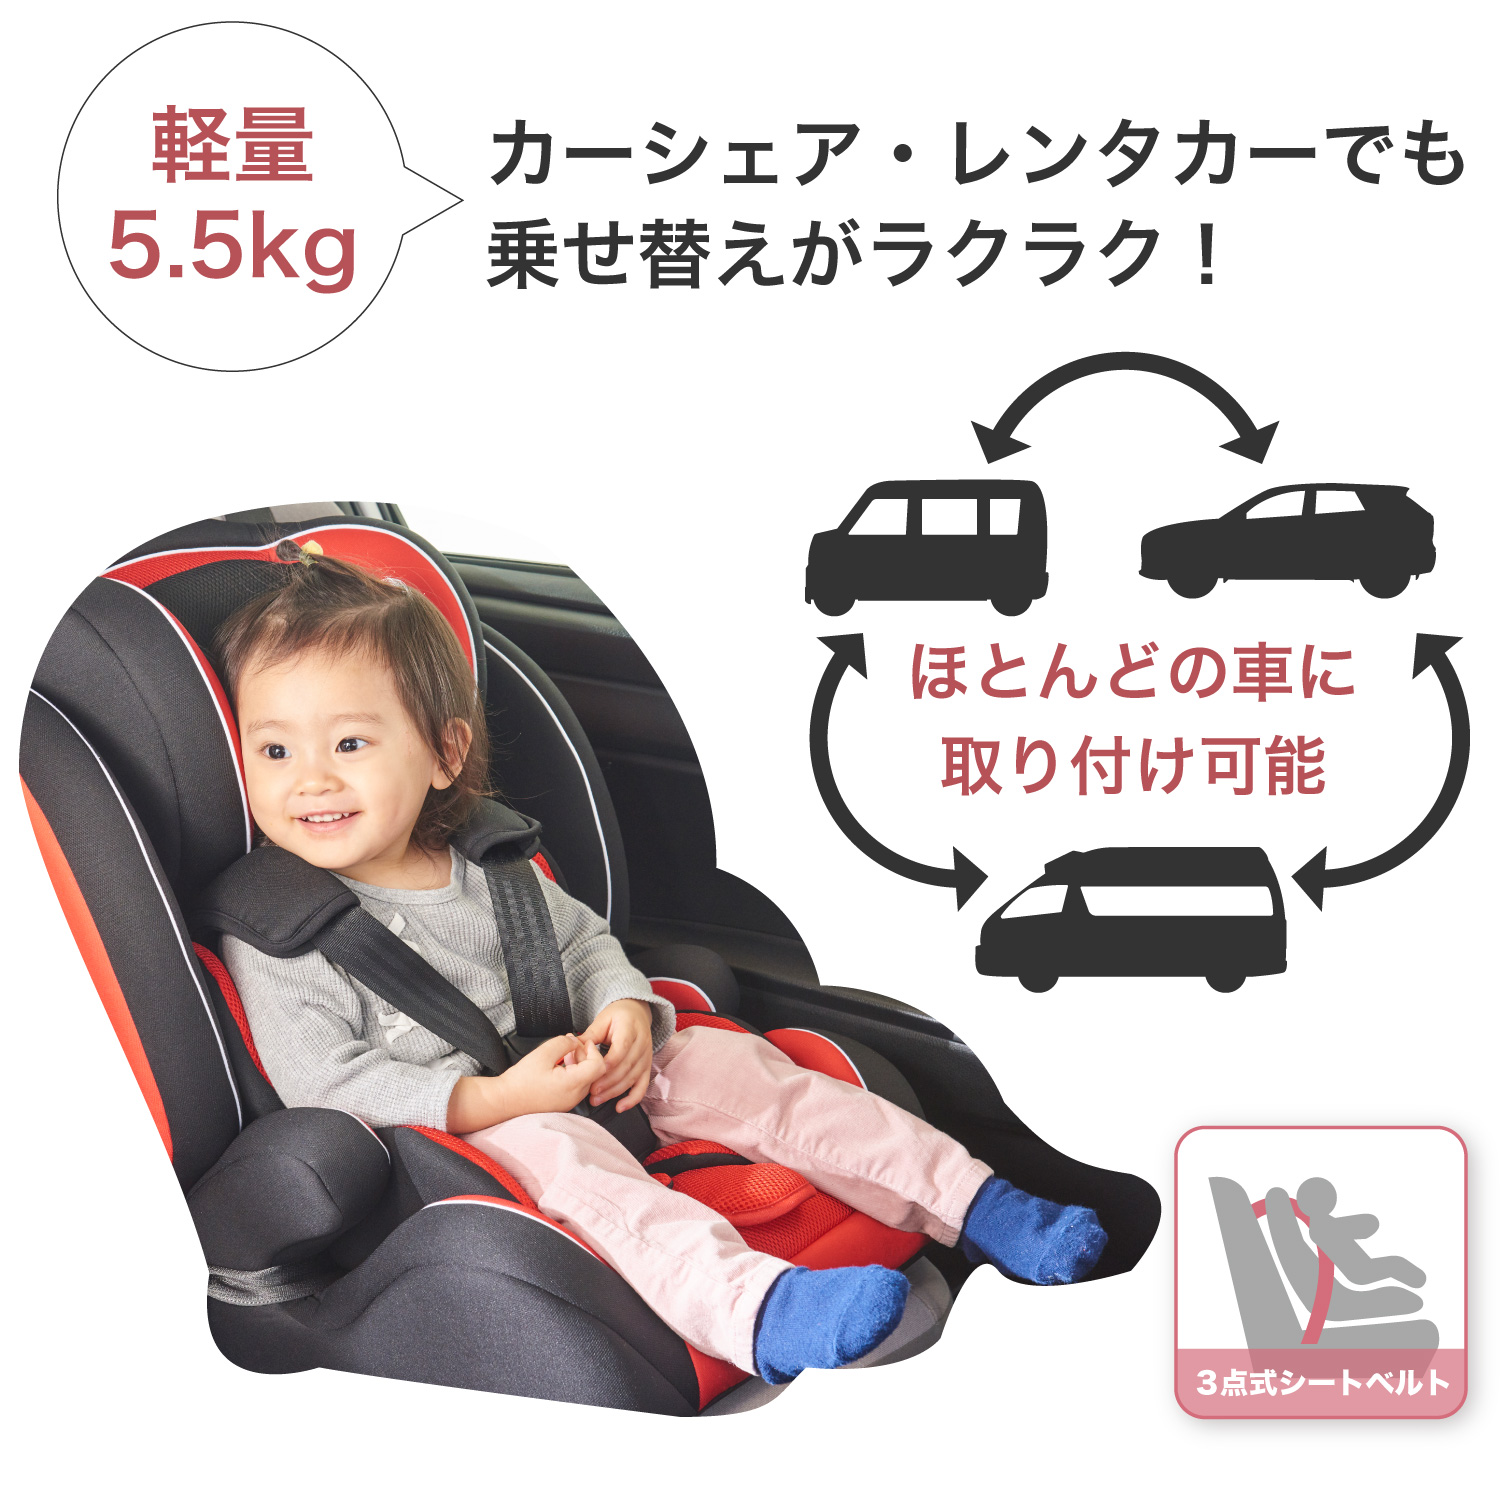 ハイバックブースター ルージュ | 3点式シートベルト固定方式のチャイルドシート | 日本育児：ベビーのために世界から